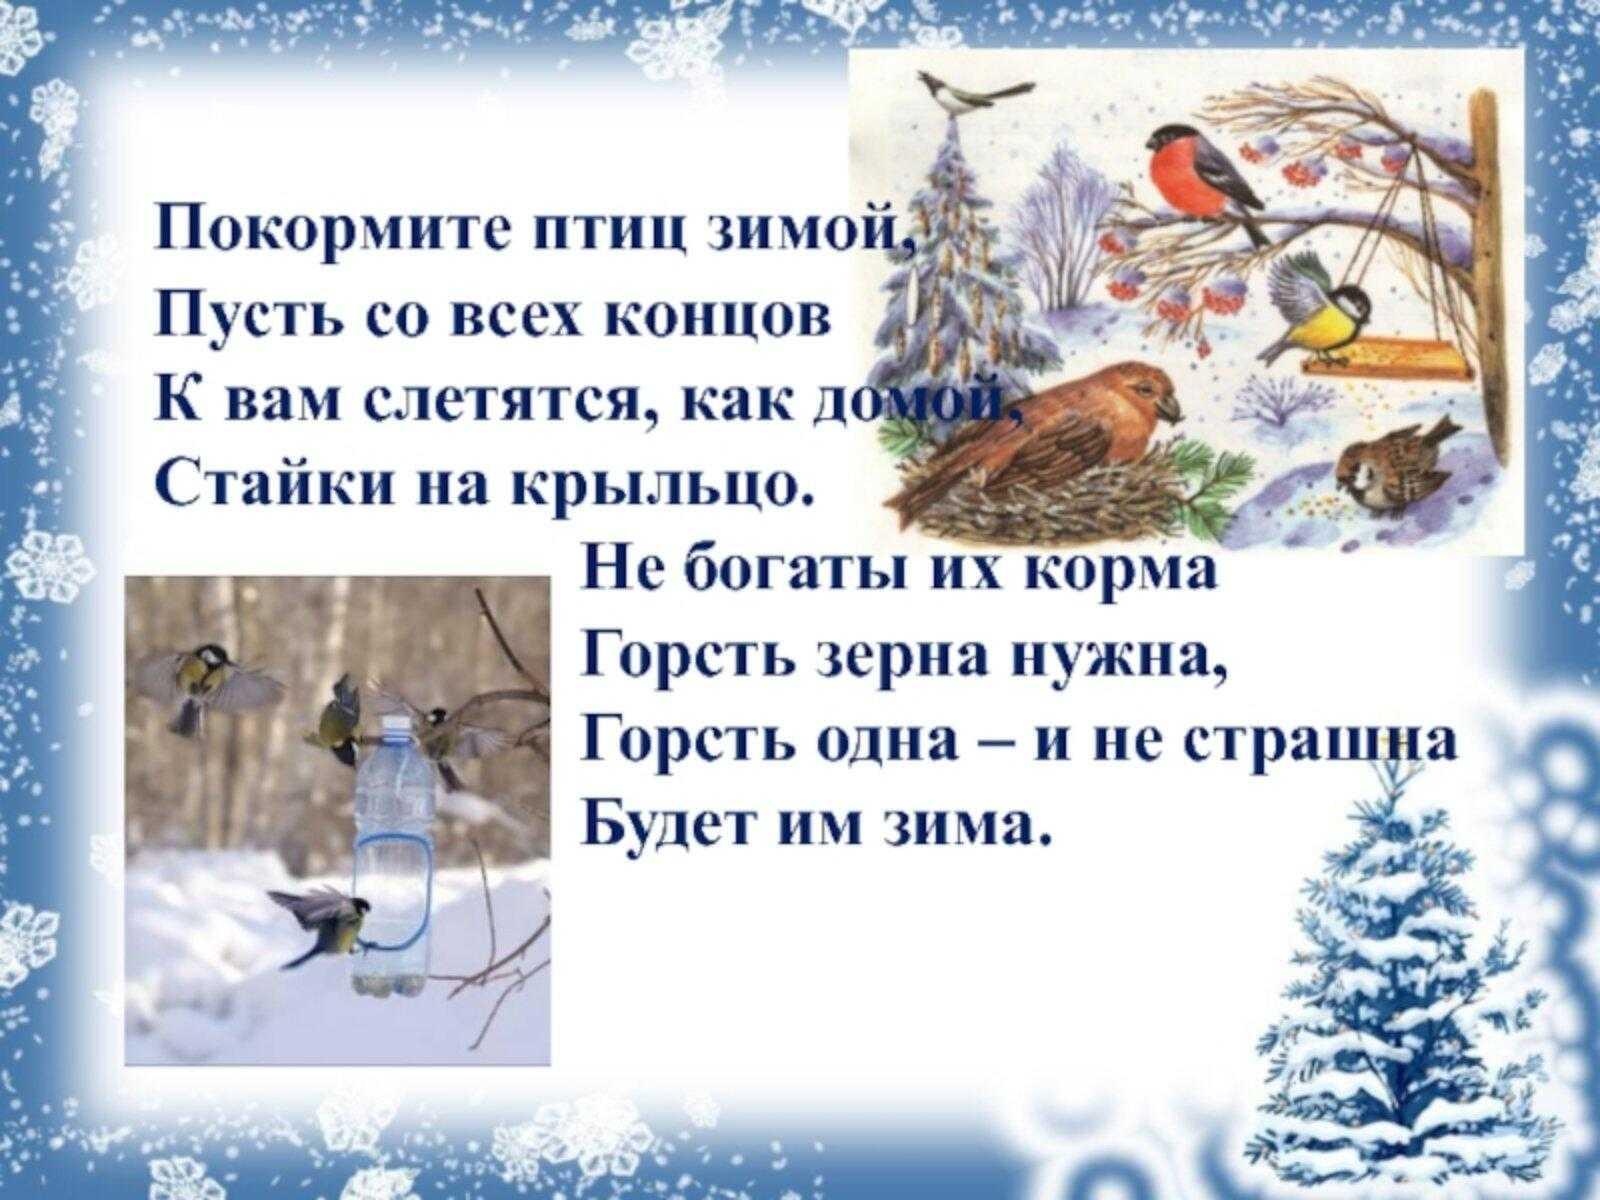 Покормите птиц зимой!»